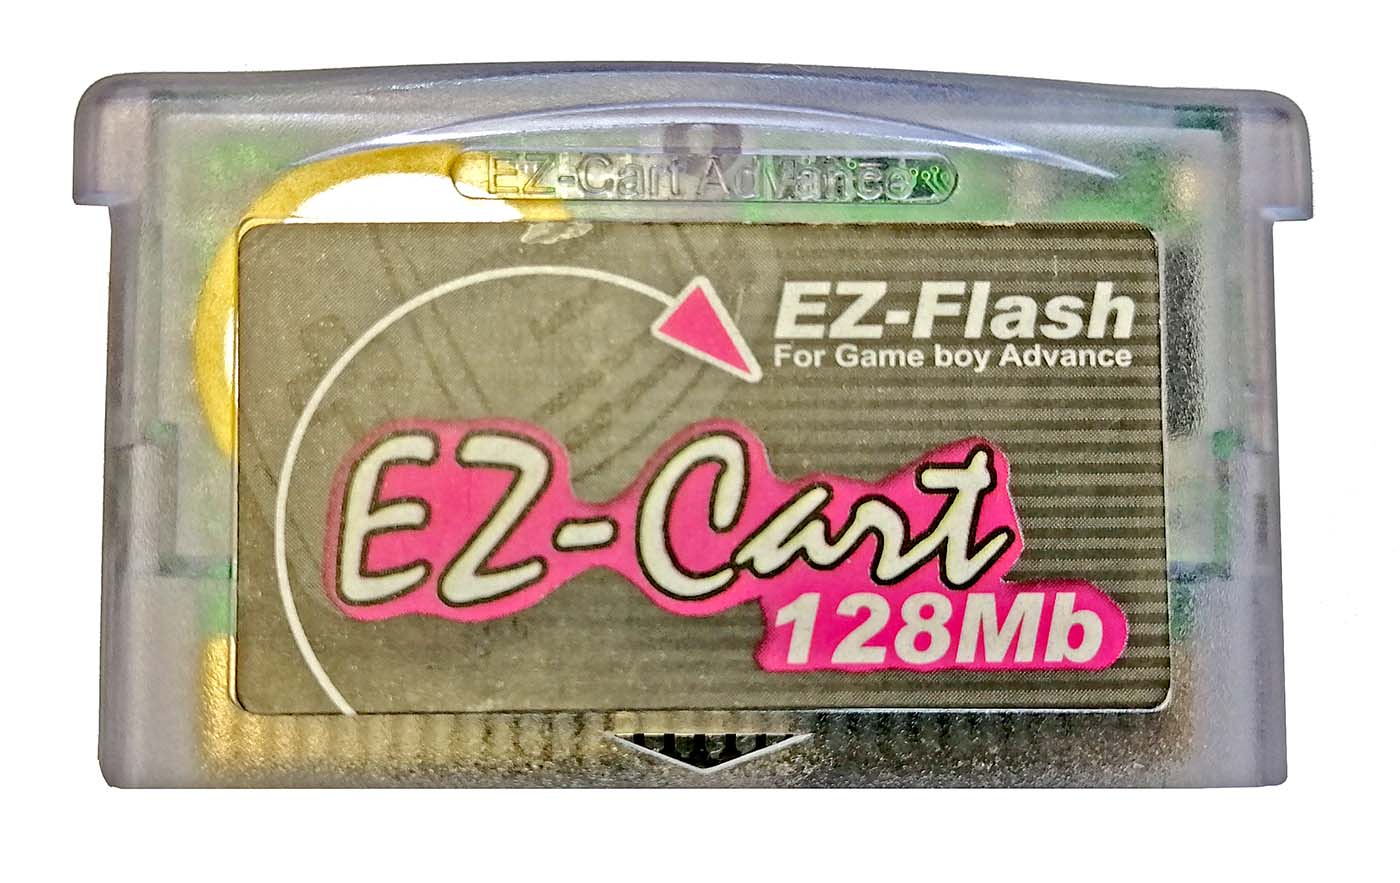 EZ-Flash I / EZ-Cart I / EZ-FLash 1